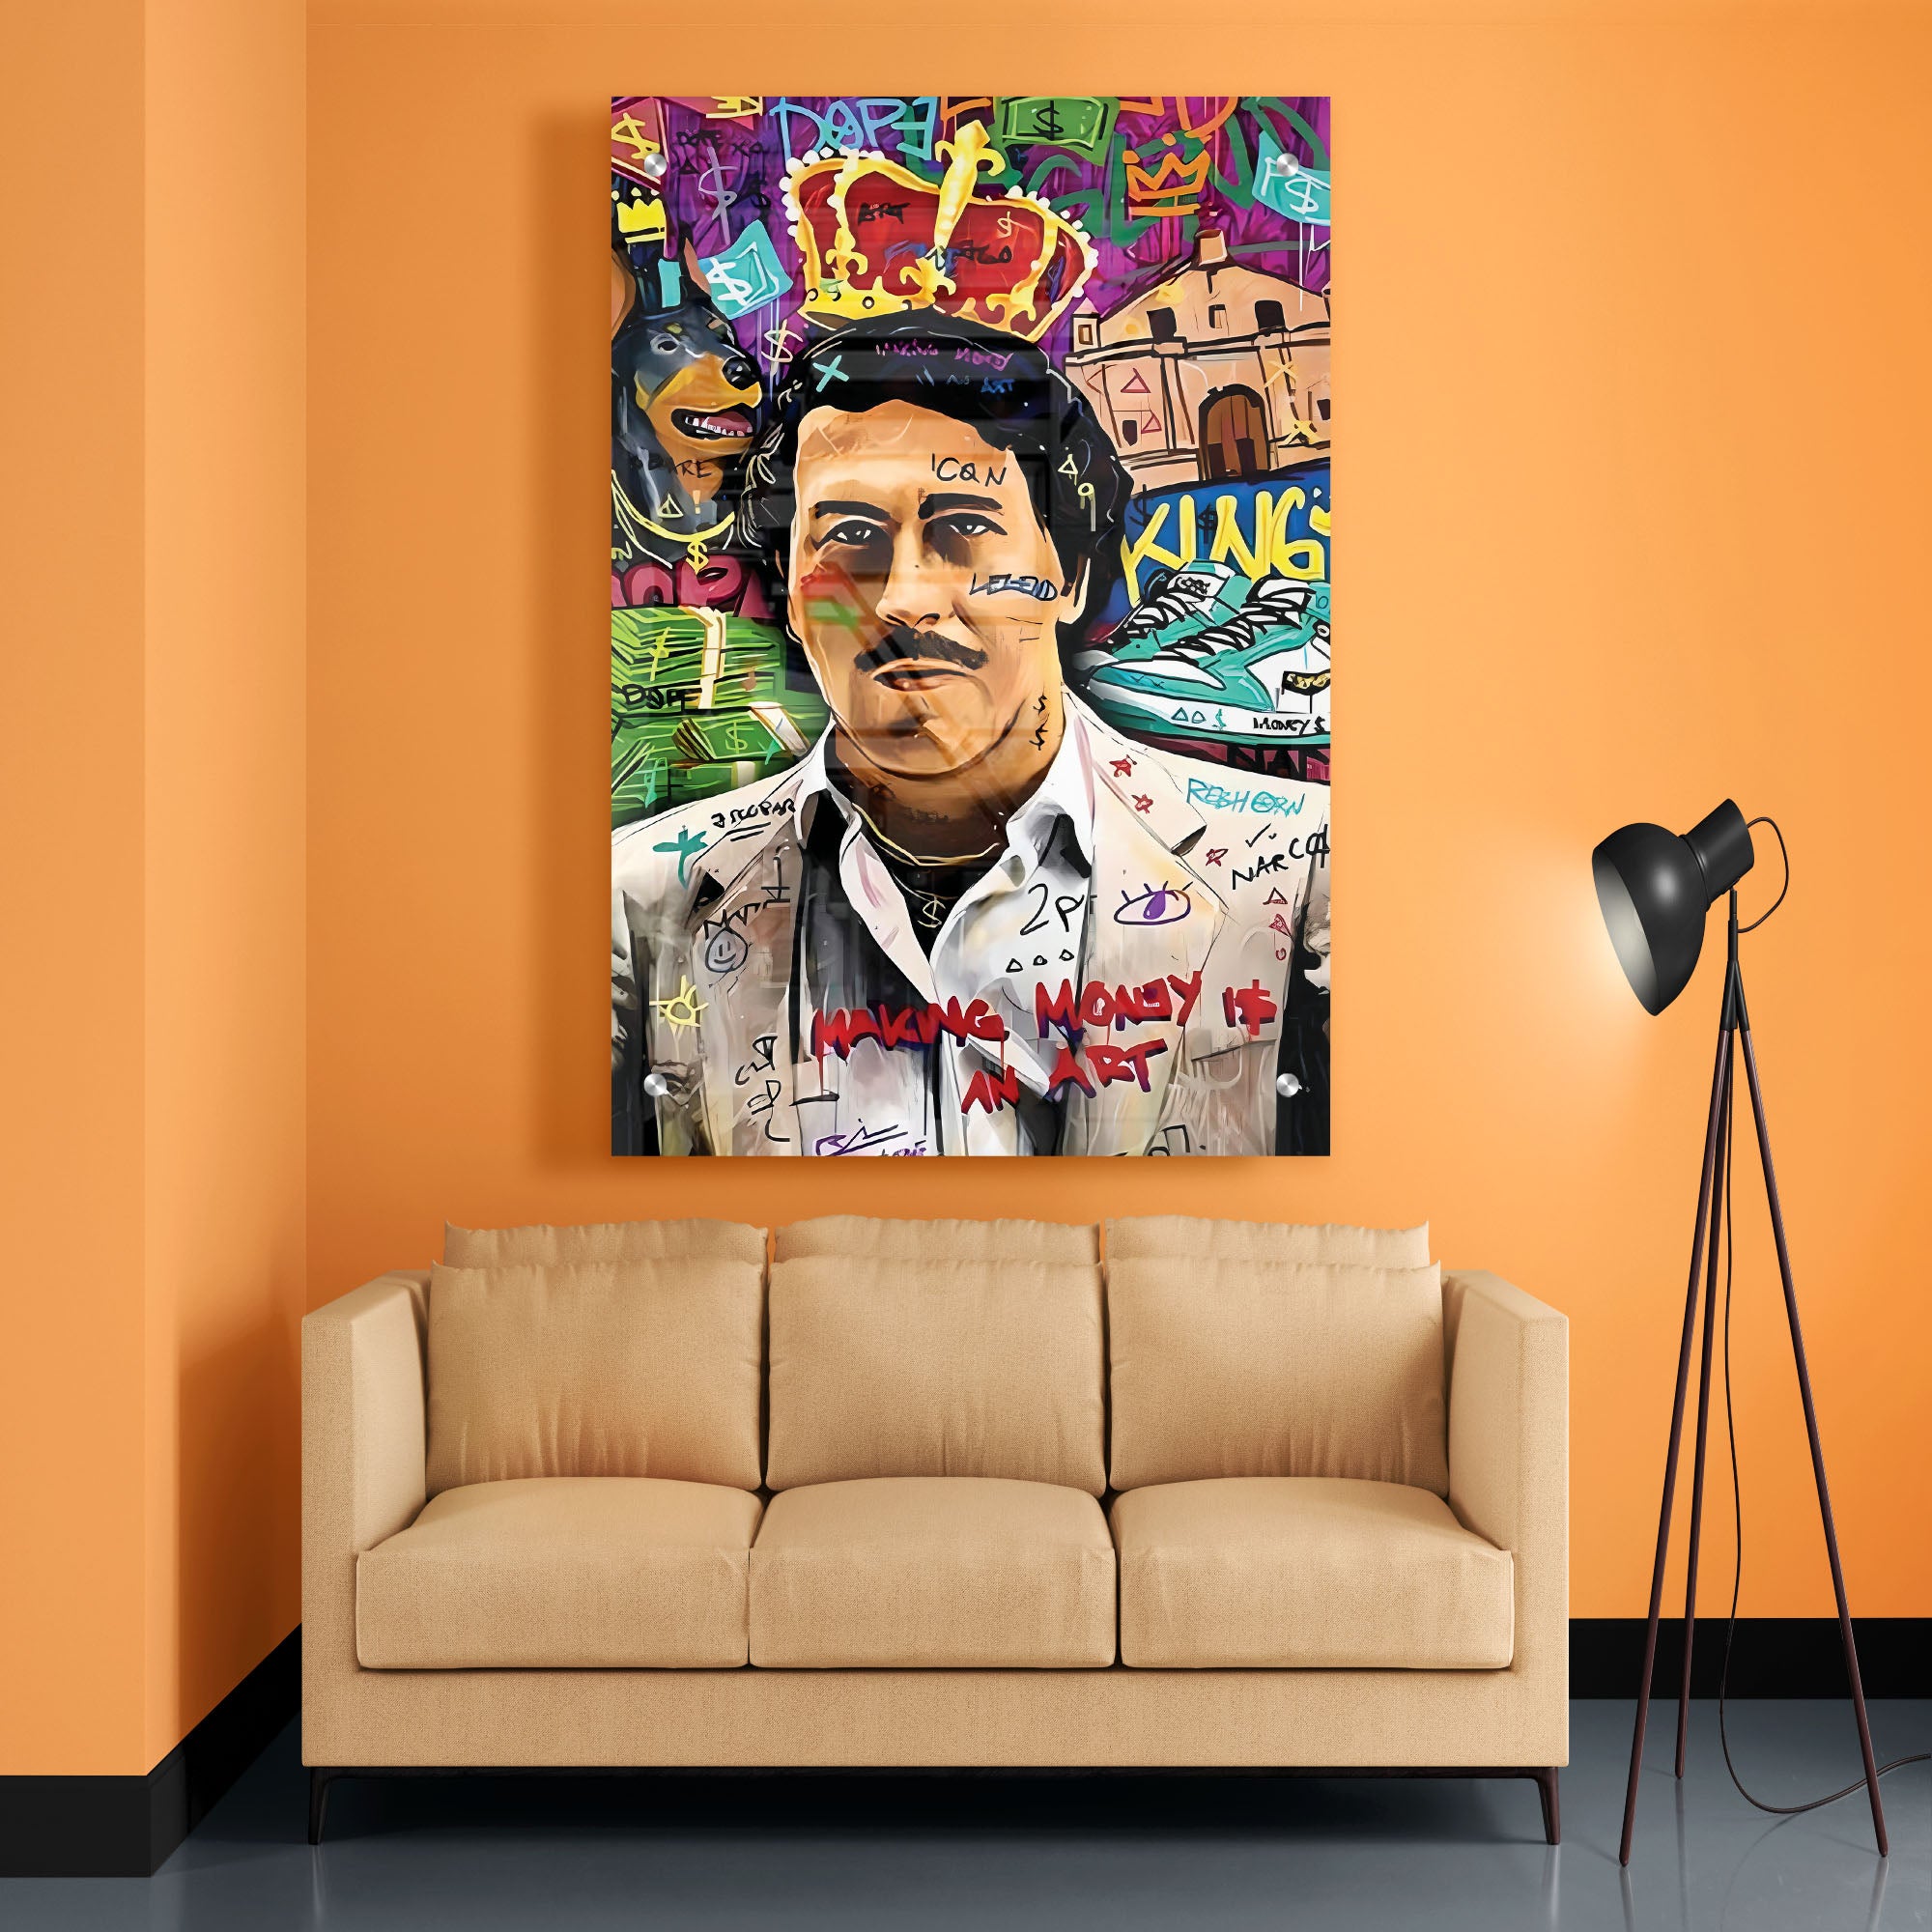 King Pablo Escobar Acrylic Wall Painting